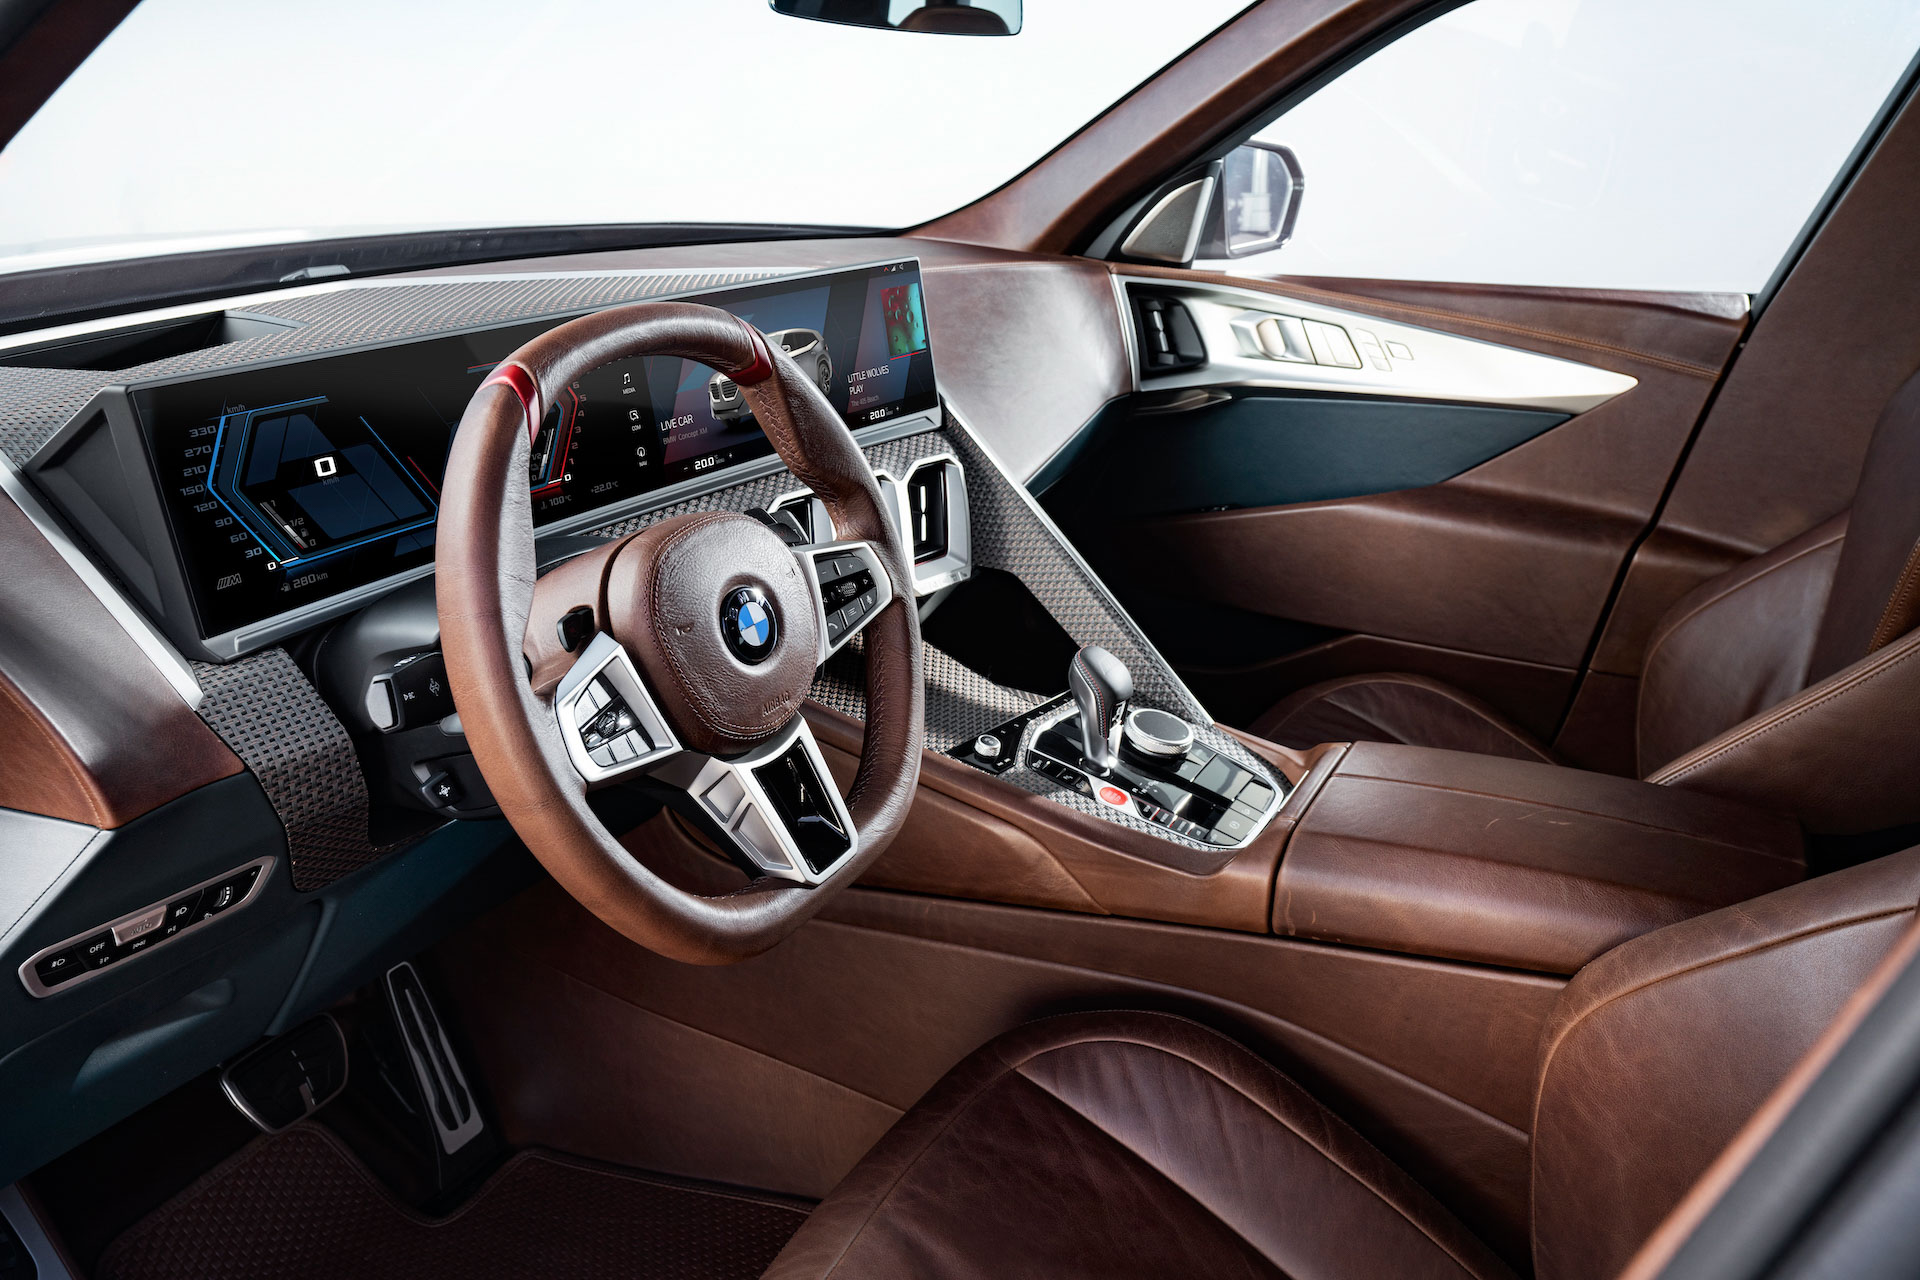 Lộ cấu hình khủng long BMW XM sắp ra mắt: Động cơ lai V8 tăng áp kép hoàn toàn mới là yếu tố bất ngờ - Ảnh 3.